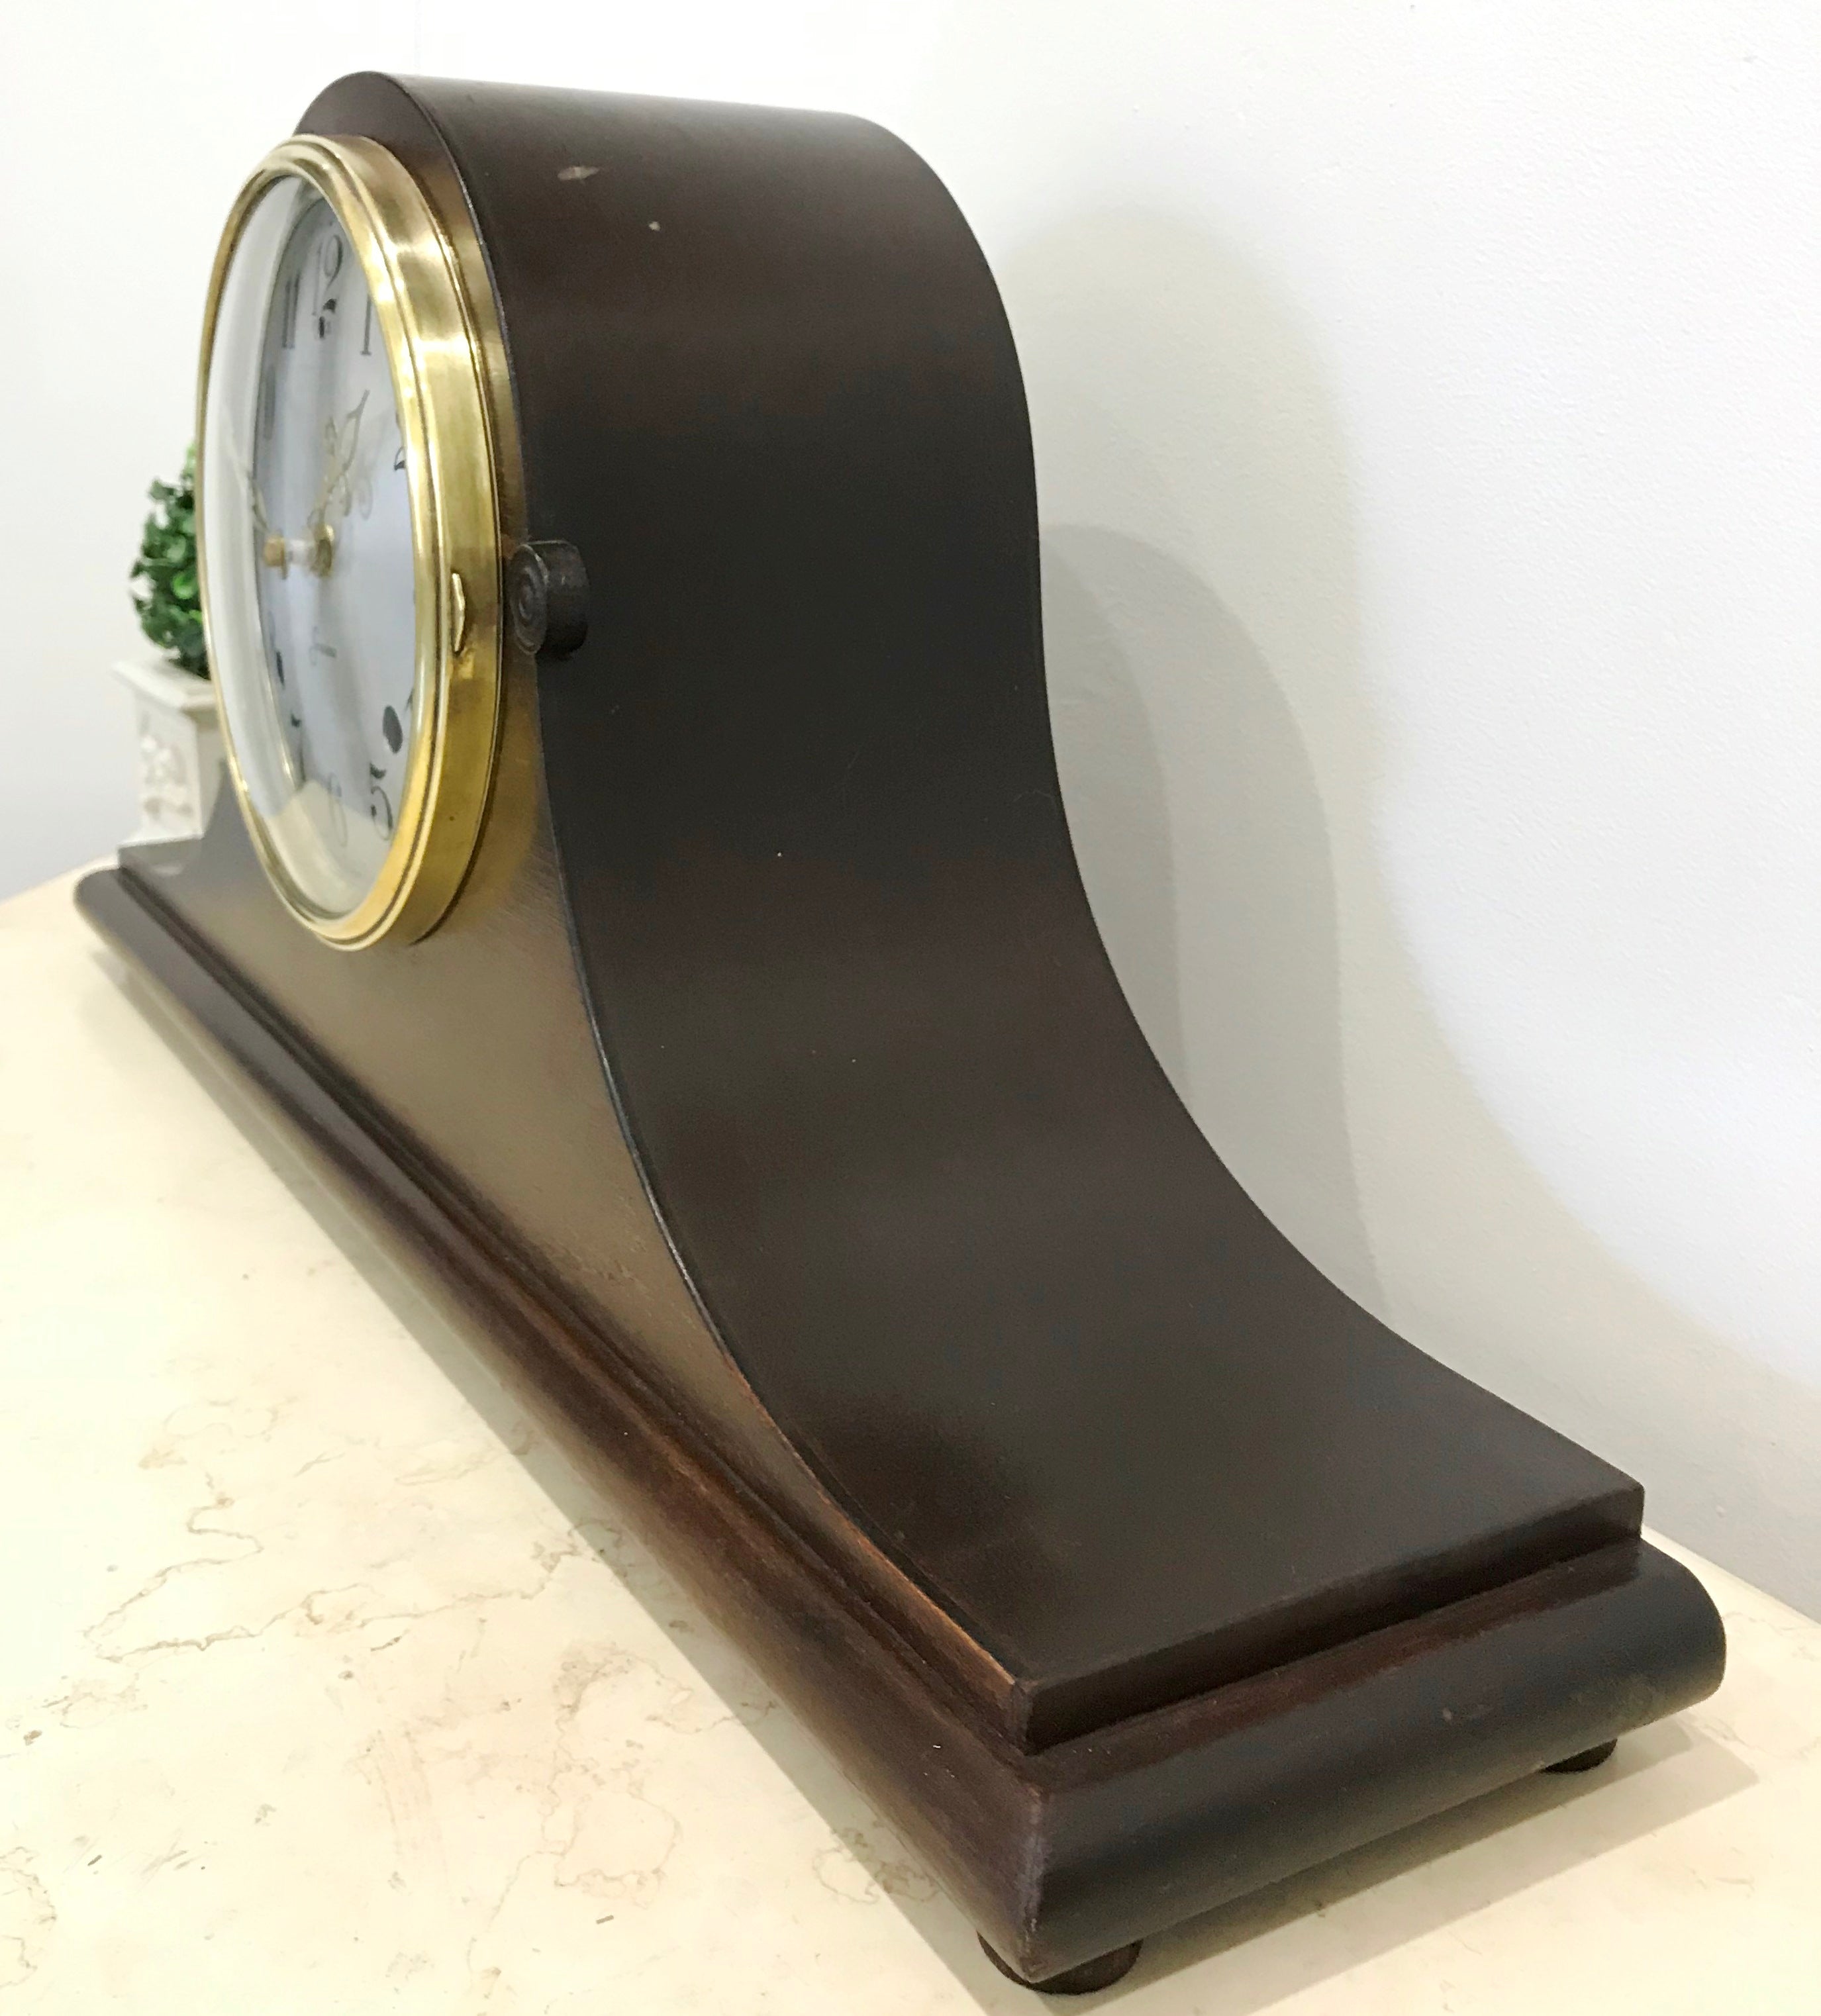 Vintage Quartz Sessions Mantel Clock | eXibit collection